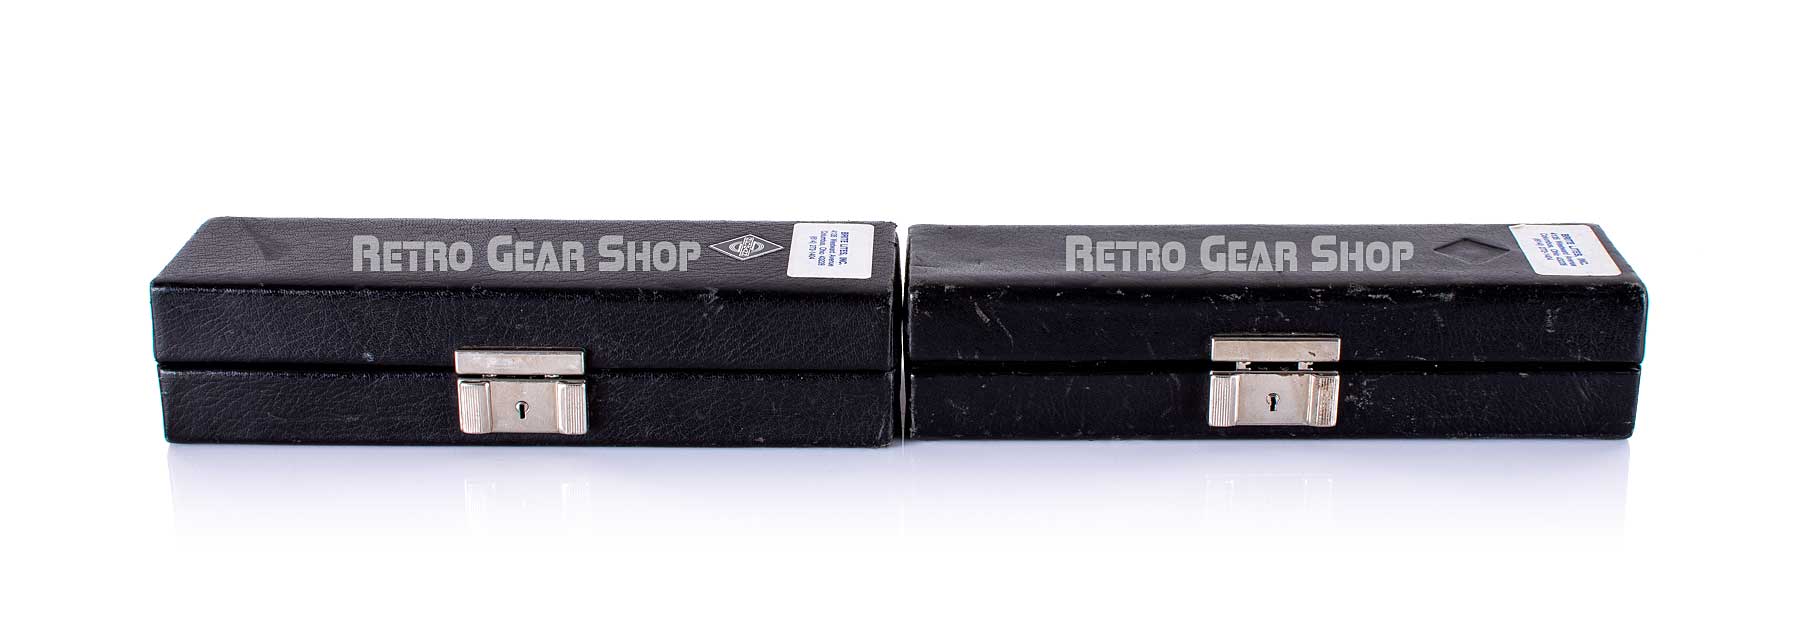 Neumann KM84i Stereo Pair Vintage Cases